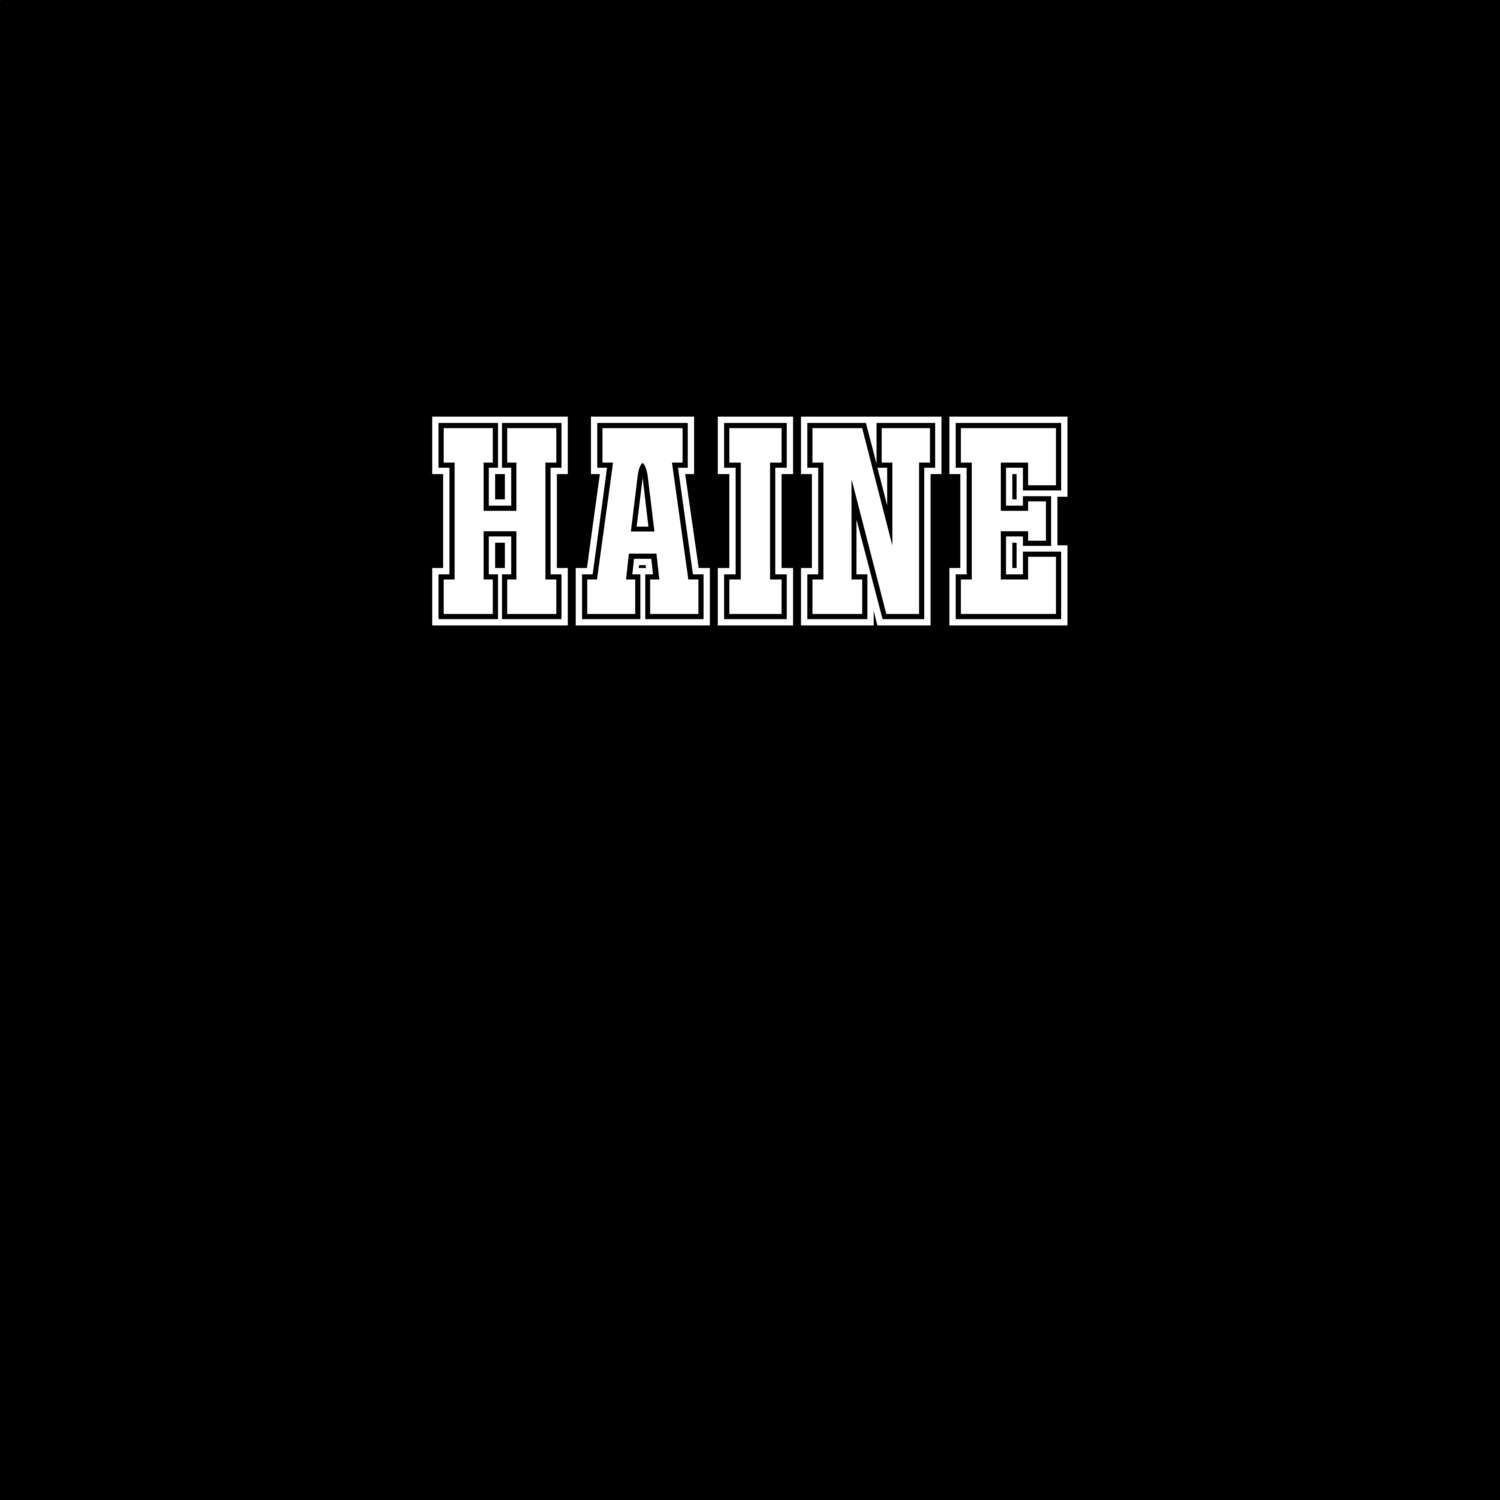 Haine T-Shirt »Classic«